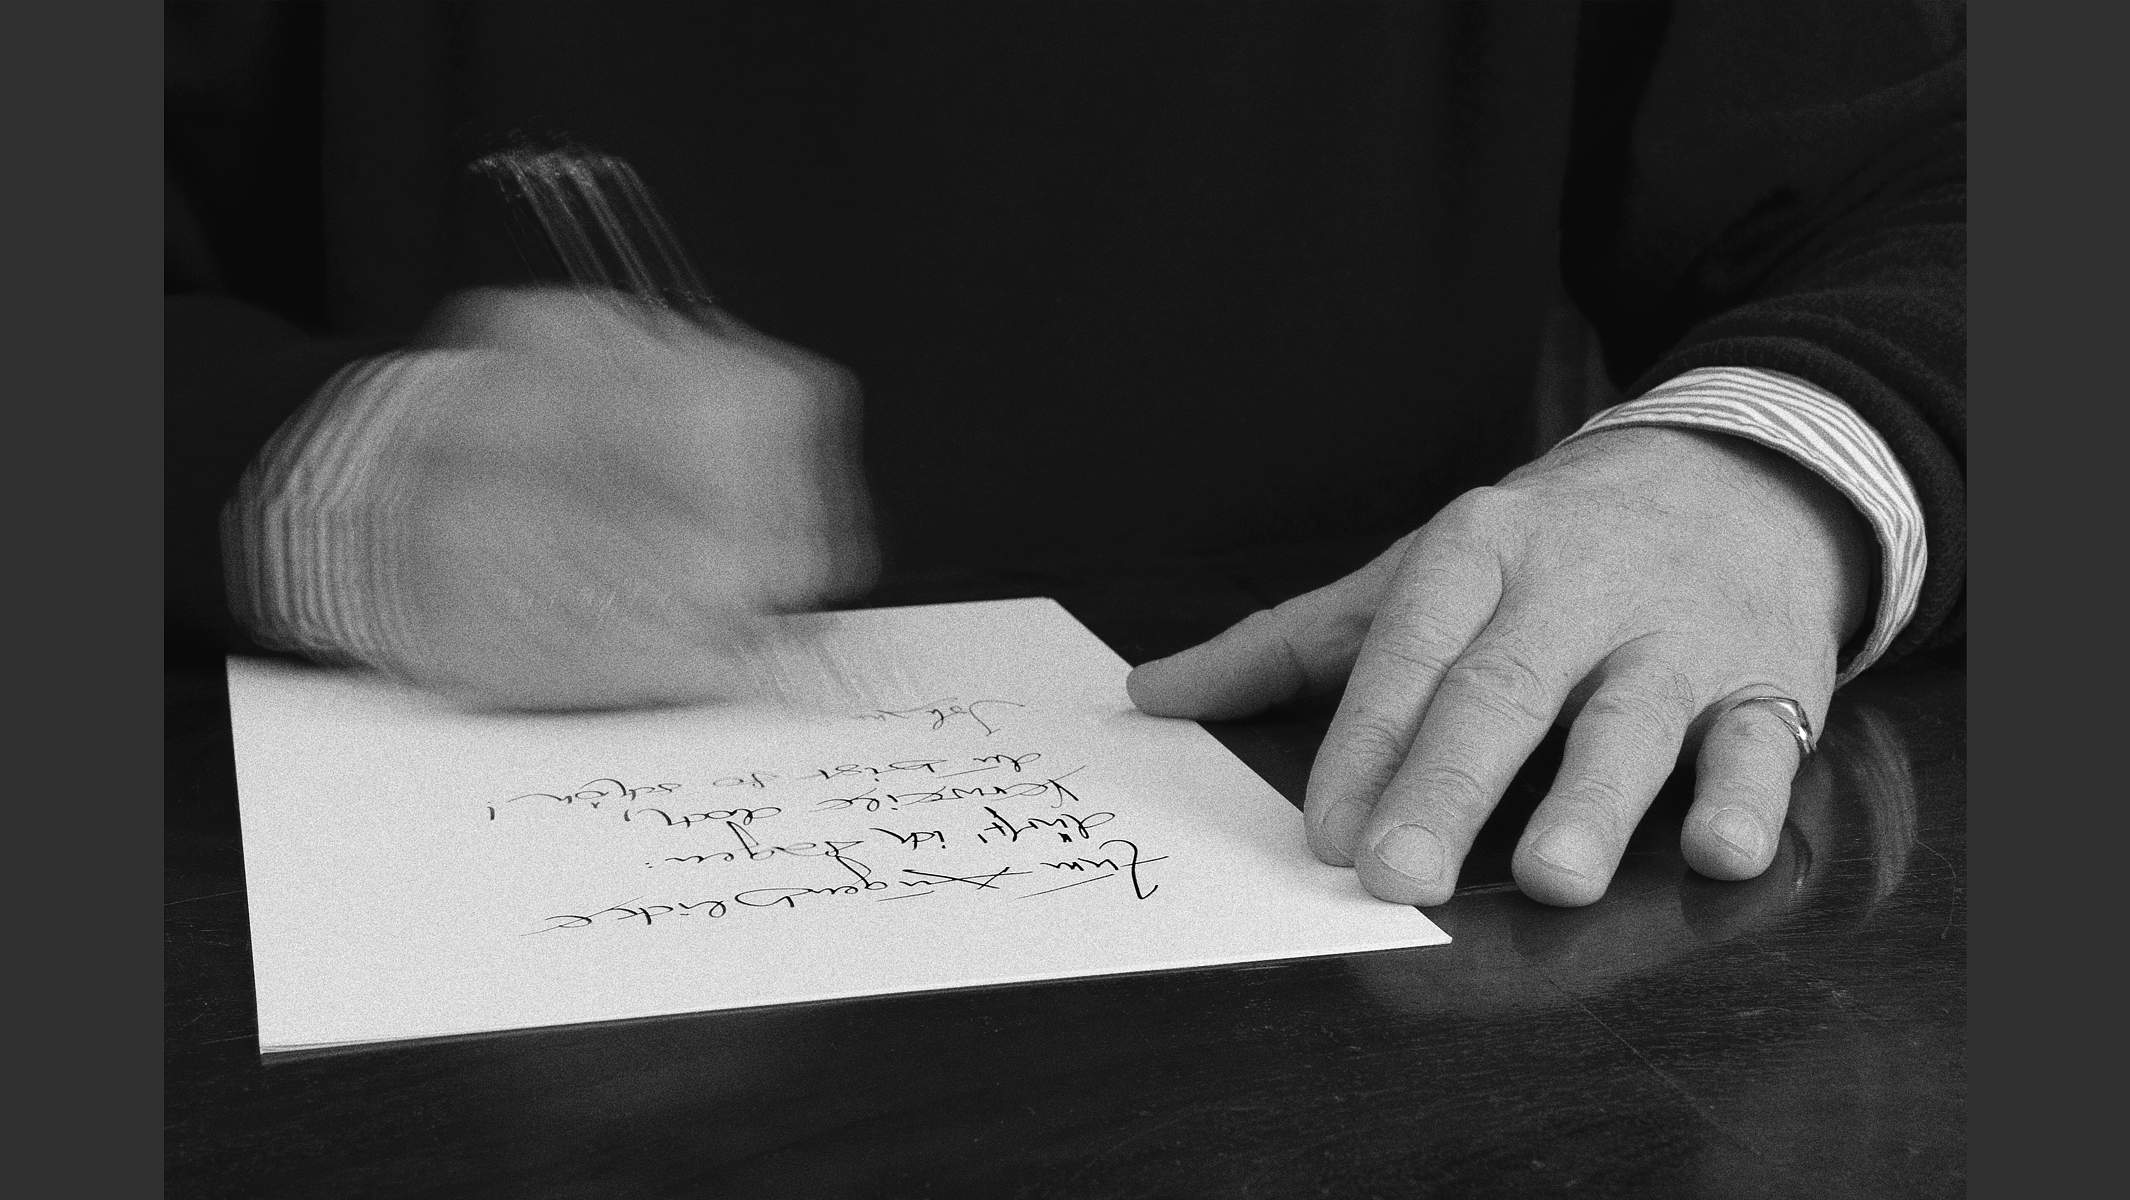 Thomas Baders Hände beim Schreiben eines Gedichts, Foto in schwarzweiss. © Martin Geier